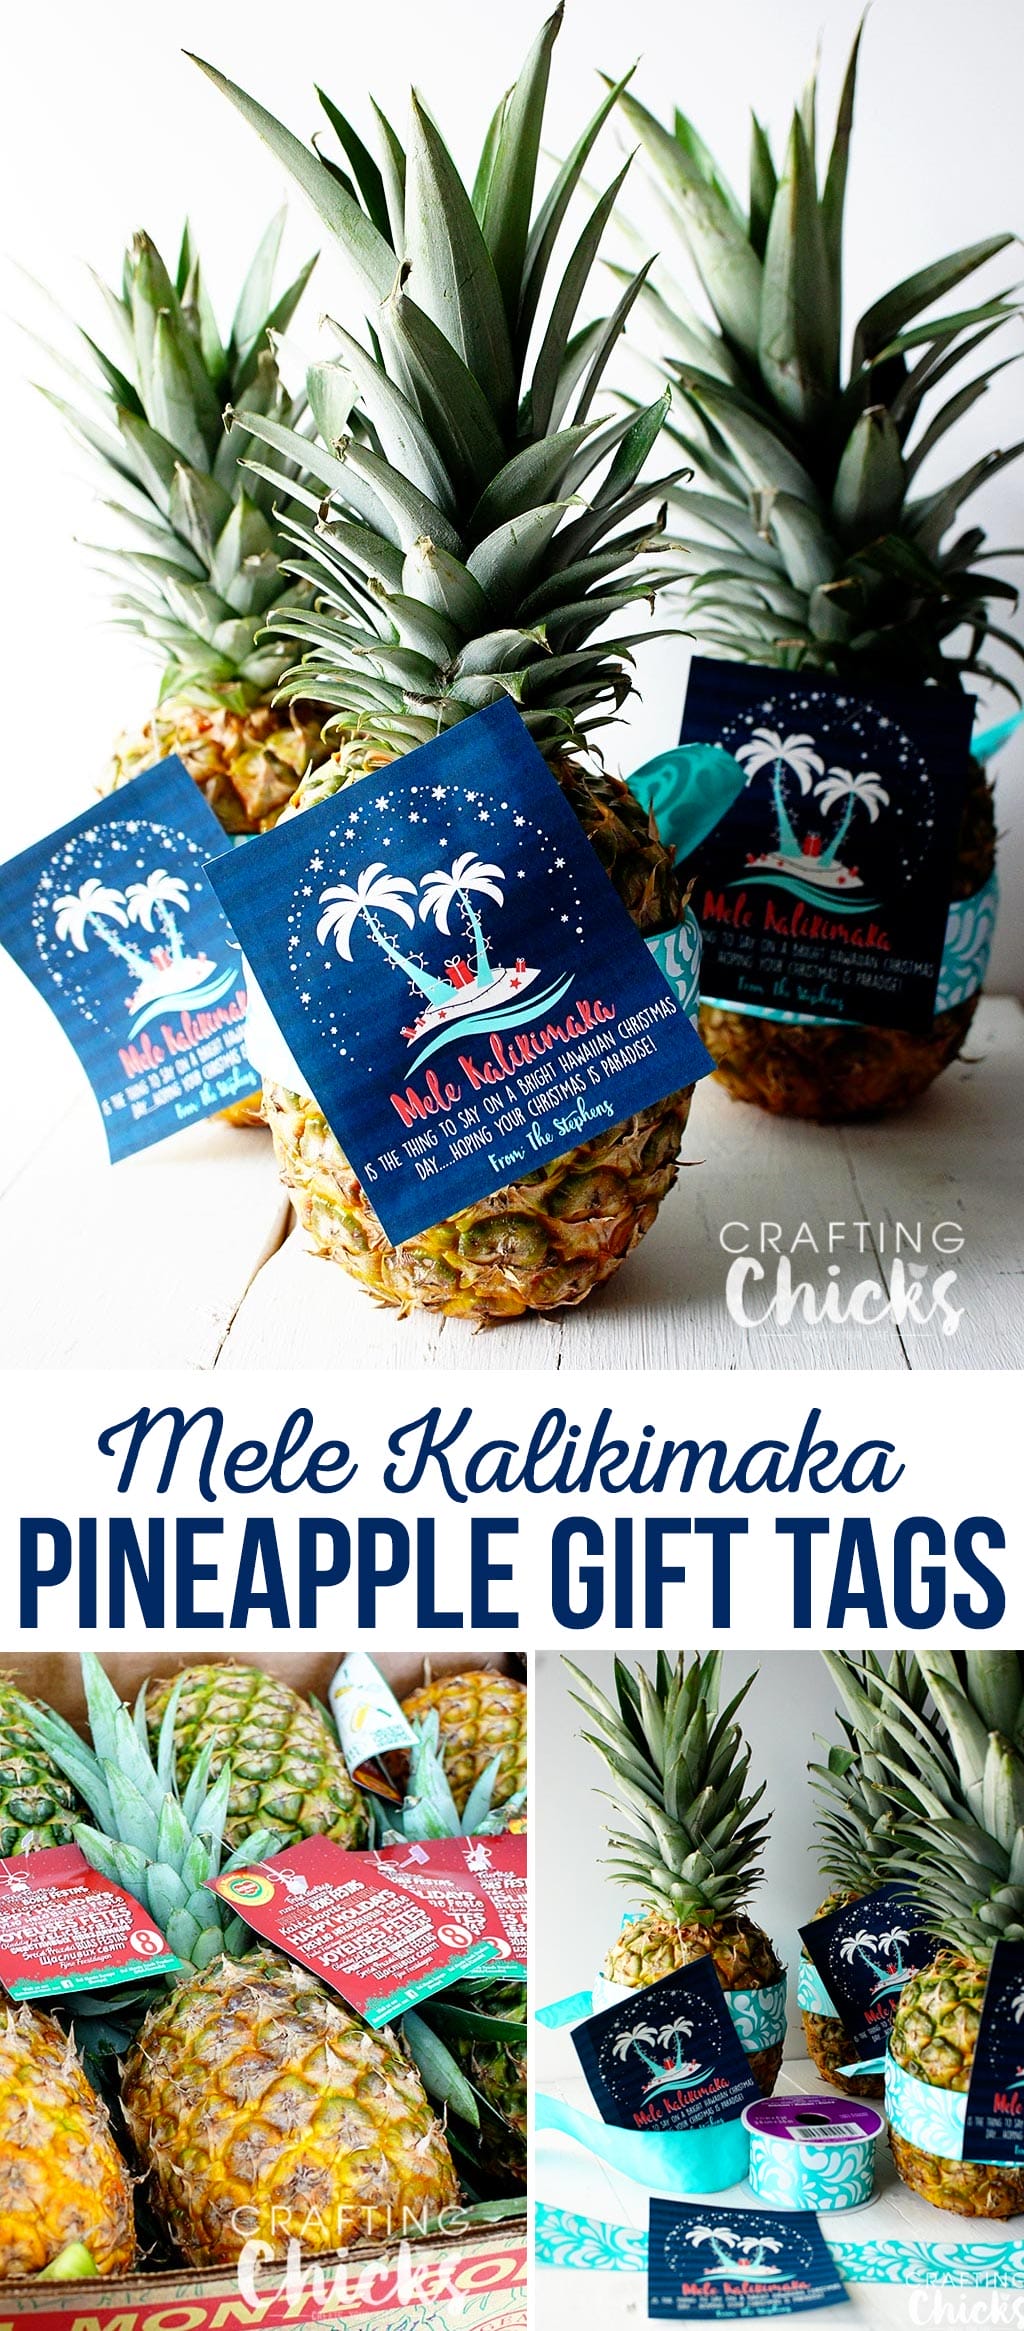 Pineapple Christmas Gift Tag - Mele Kalikimaka